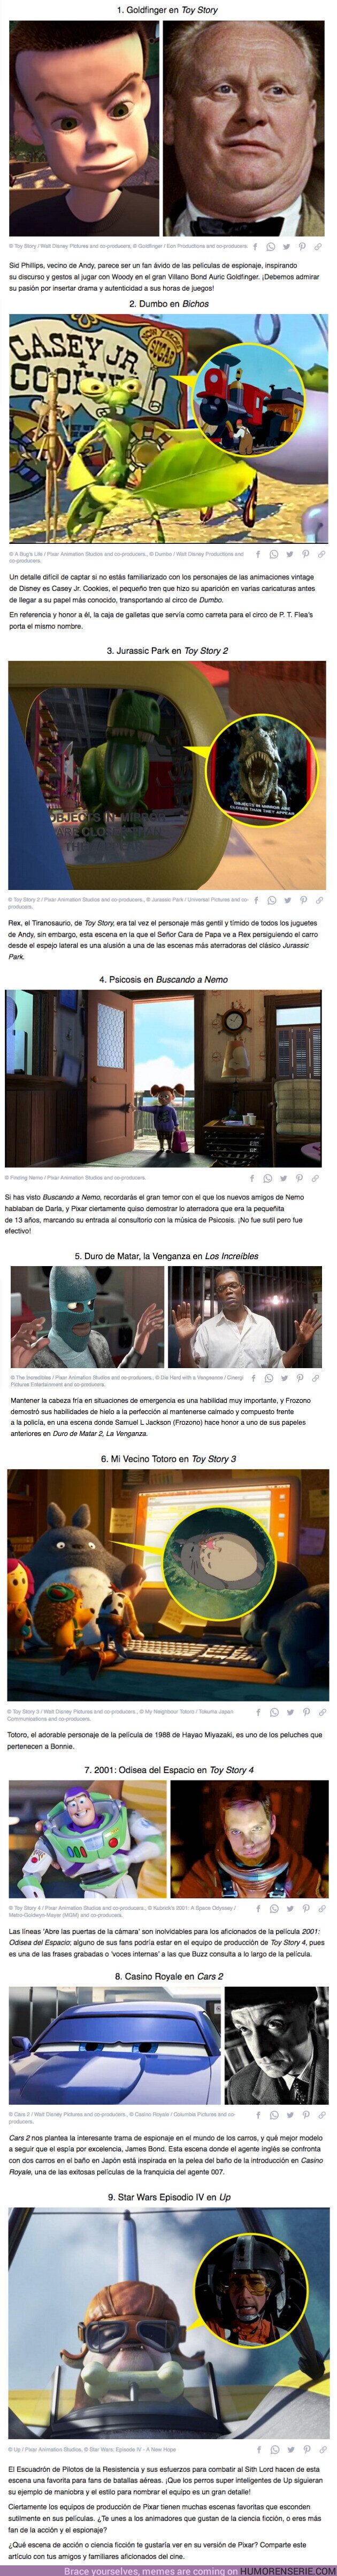 66499 - GALERÍA: 9 Escenas en películas de Pixar que hacen referencia a escenas épicas de clásicos del cine